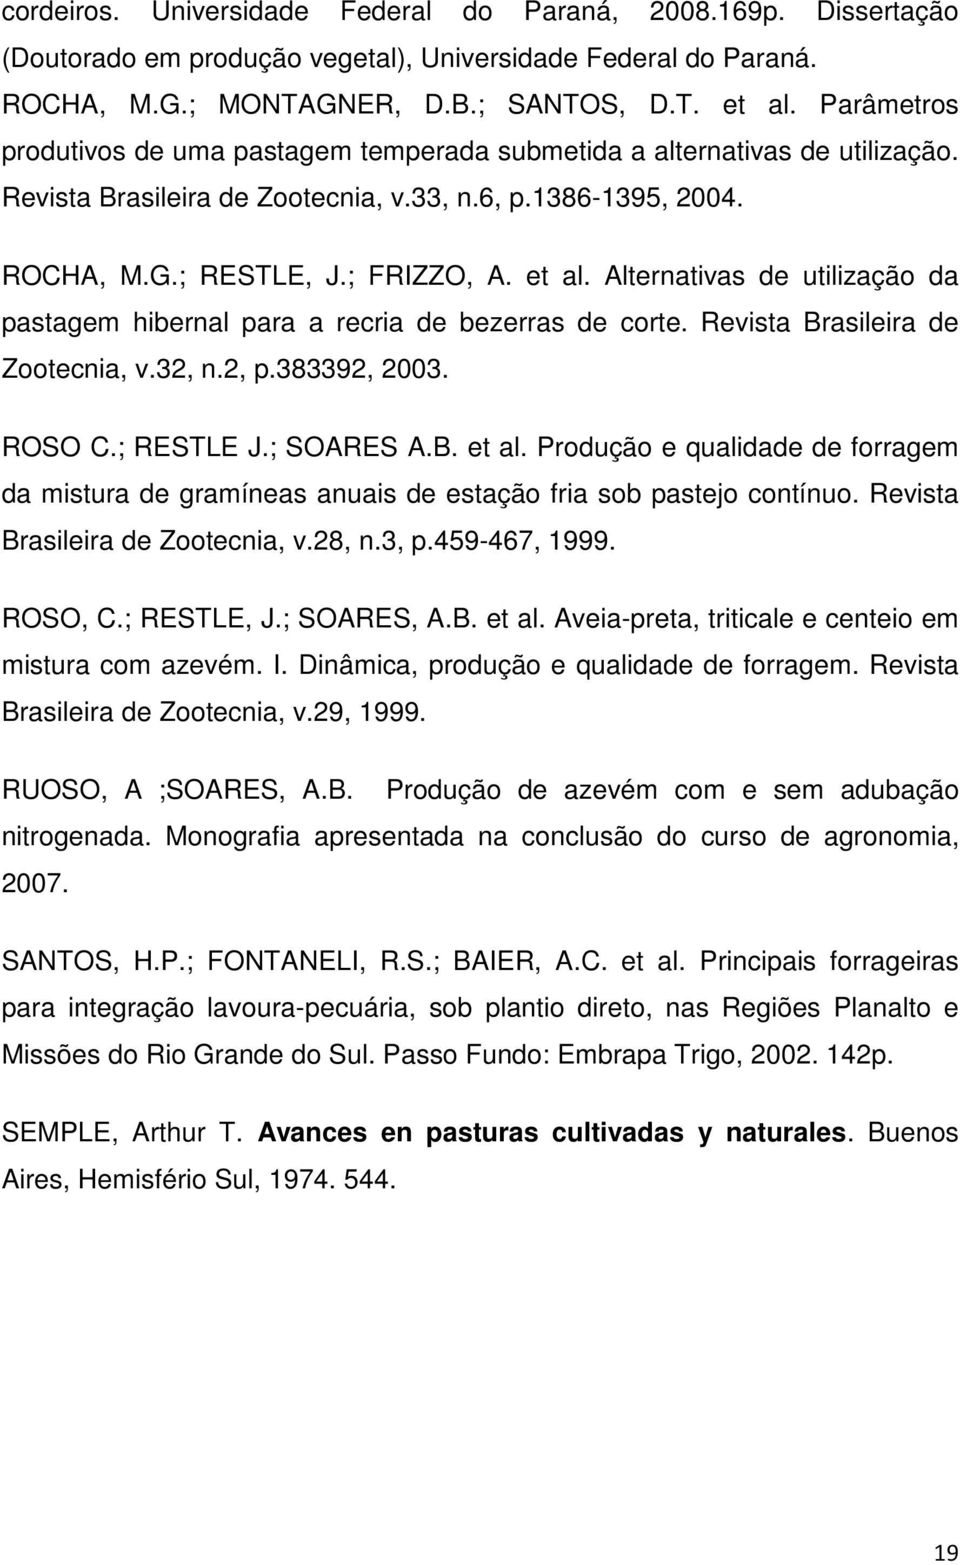 Alternativas de utilização da pastagem hibernal para a recria de bezerras de corte. Revista Brasileira de Zootecnia, v.32, n.2, p.383392, 2003. ROSO C.; RESTLE J.; SOARES A.B. et al.